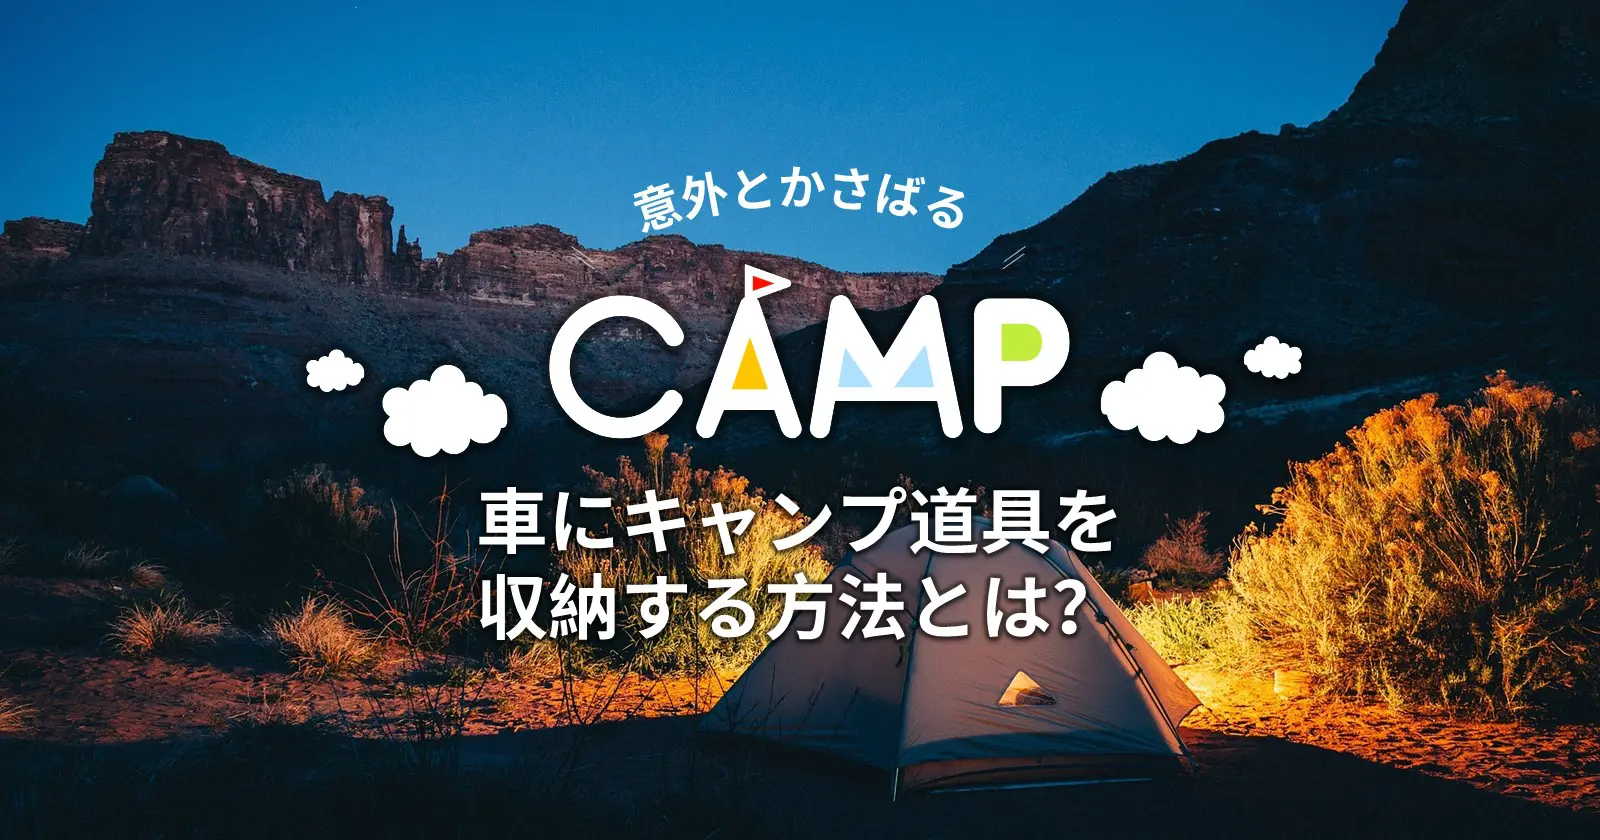 意外とかさばる 車にキャンプ道具を収納する方法とは Takibi タキビ キャンプ アウトドアの総合情報サイト